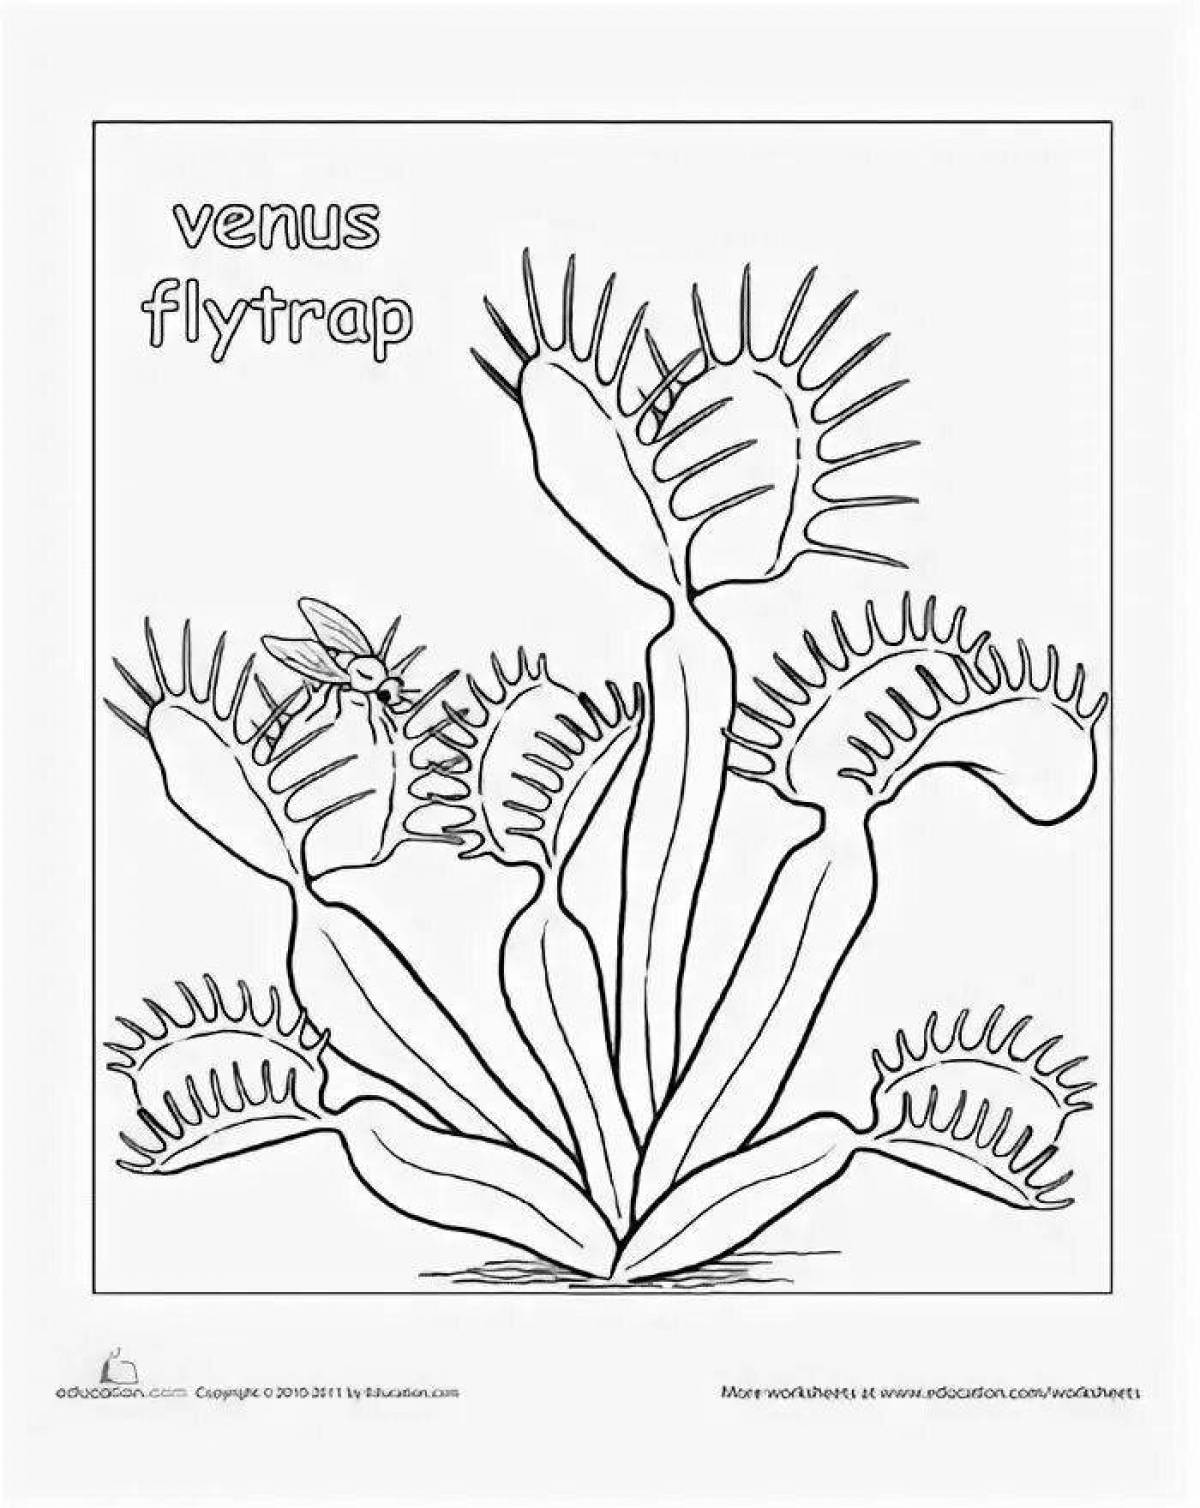 Venus flytrap coloring page